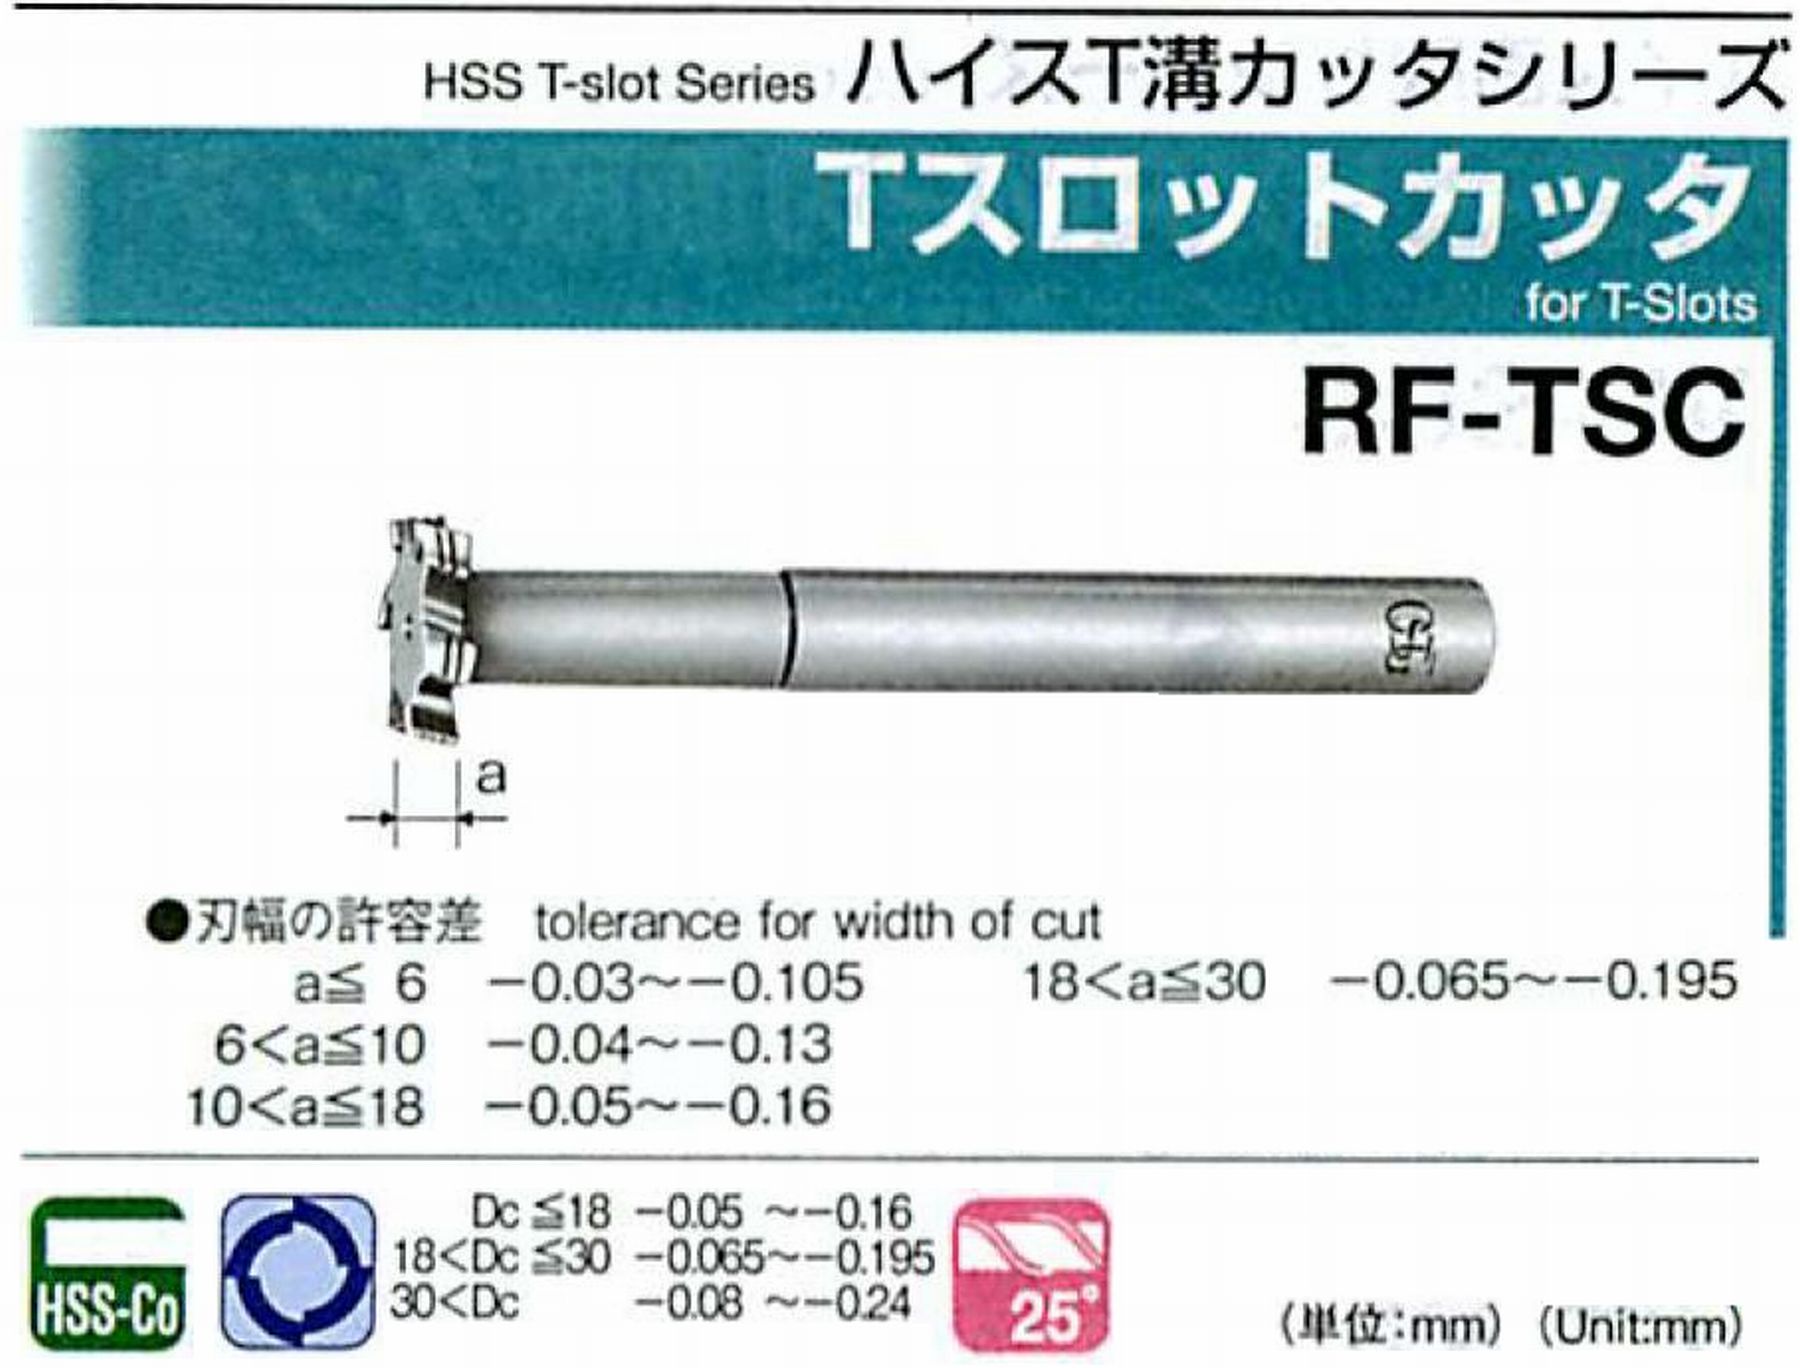 オーエスジー/OSG Tスロットカッタ RF-TSC 外径25 刃幅10 全長145 シャンク径16mm 首下長50 首径12 刃数5